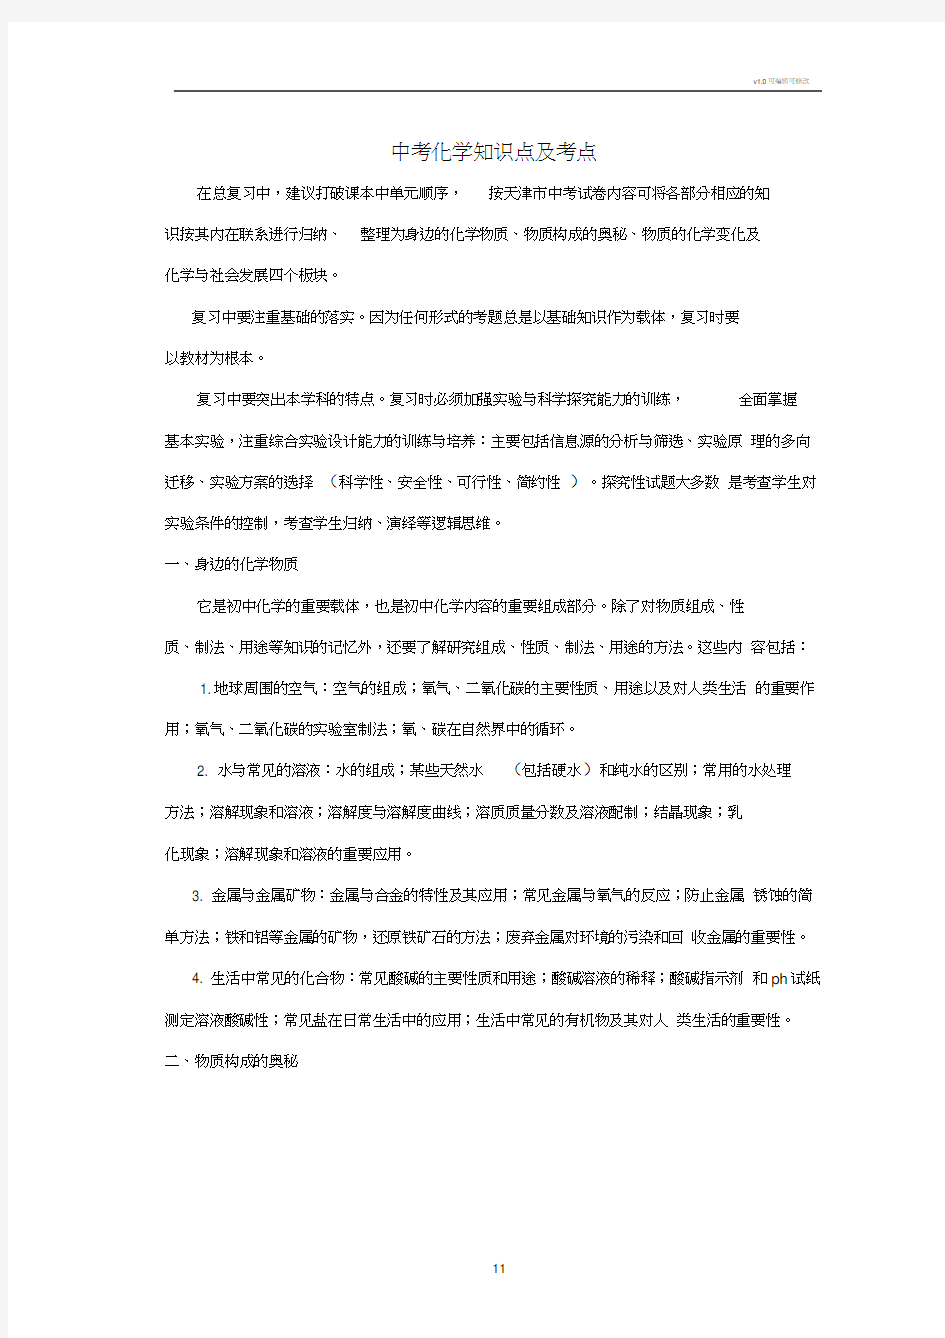 天津中考化学知识点及考点(20200814180943)